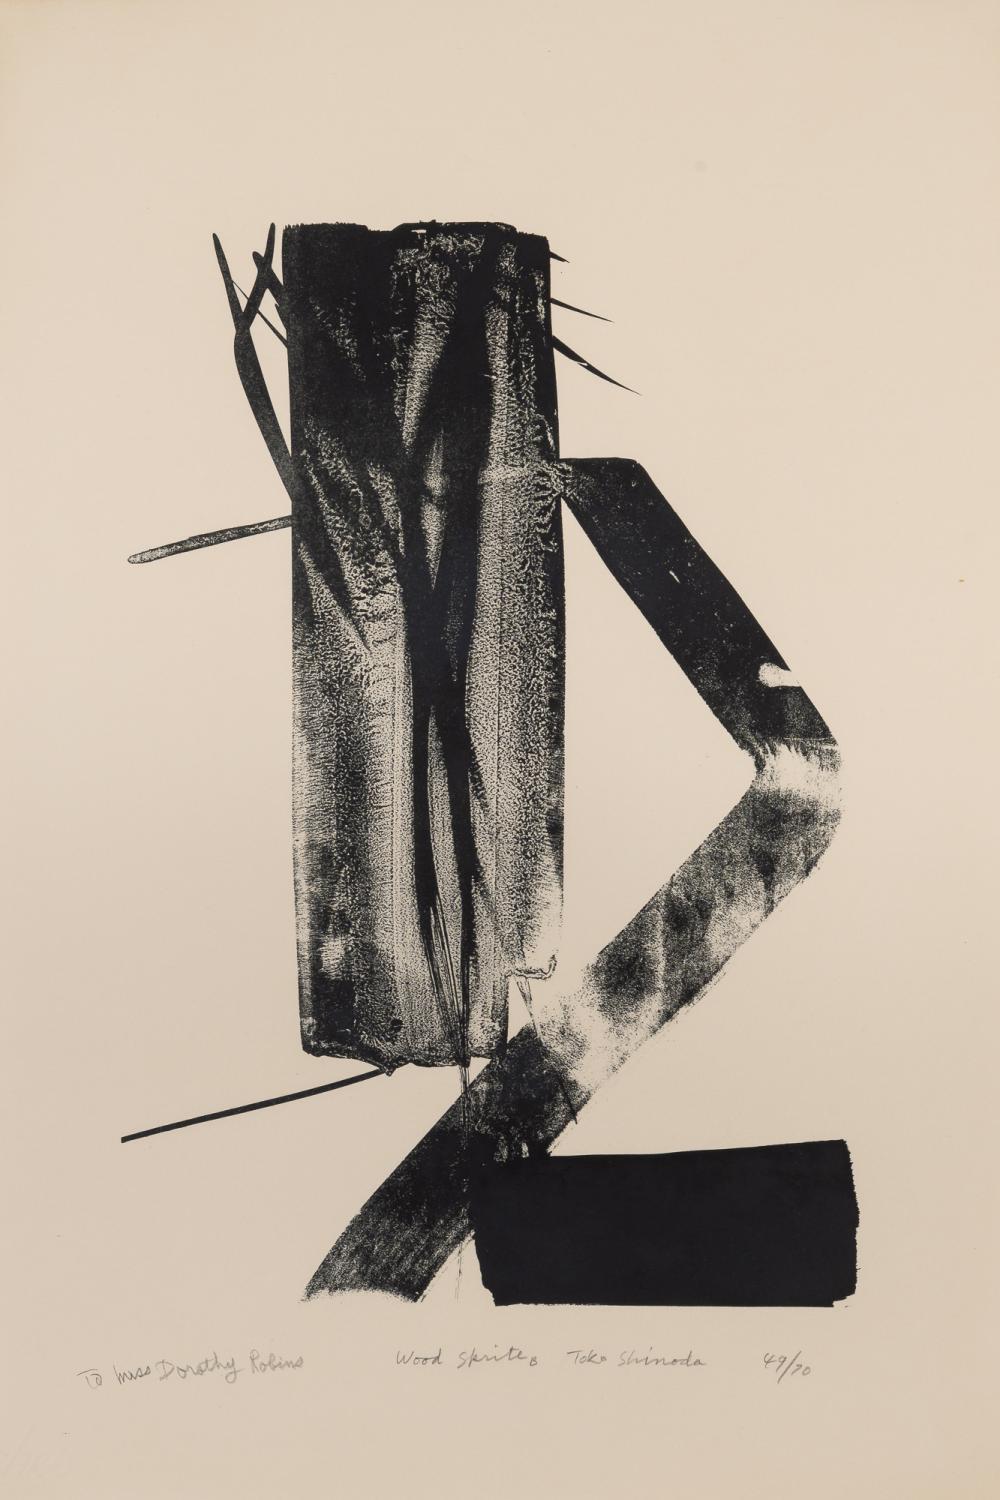 Toko SHINODA
(Japanisch, 1913-2021)
Wood Sprite B, Lithographie (Auflage 49/70)

55.8 x 38.4 cm.
Hingerichtet 1970
Betitelt, signiert, nummeriert und gewidmet "to Miss Dorothy Robins".

PROVENIENZ
Direkt von der Künstlerin erworben von Dr. Dorothy